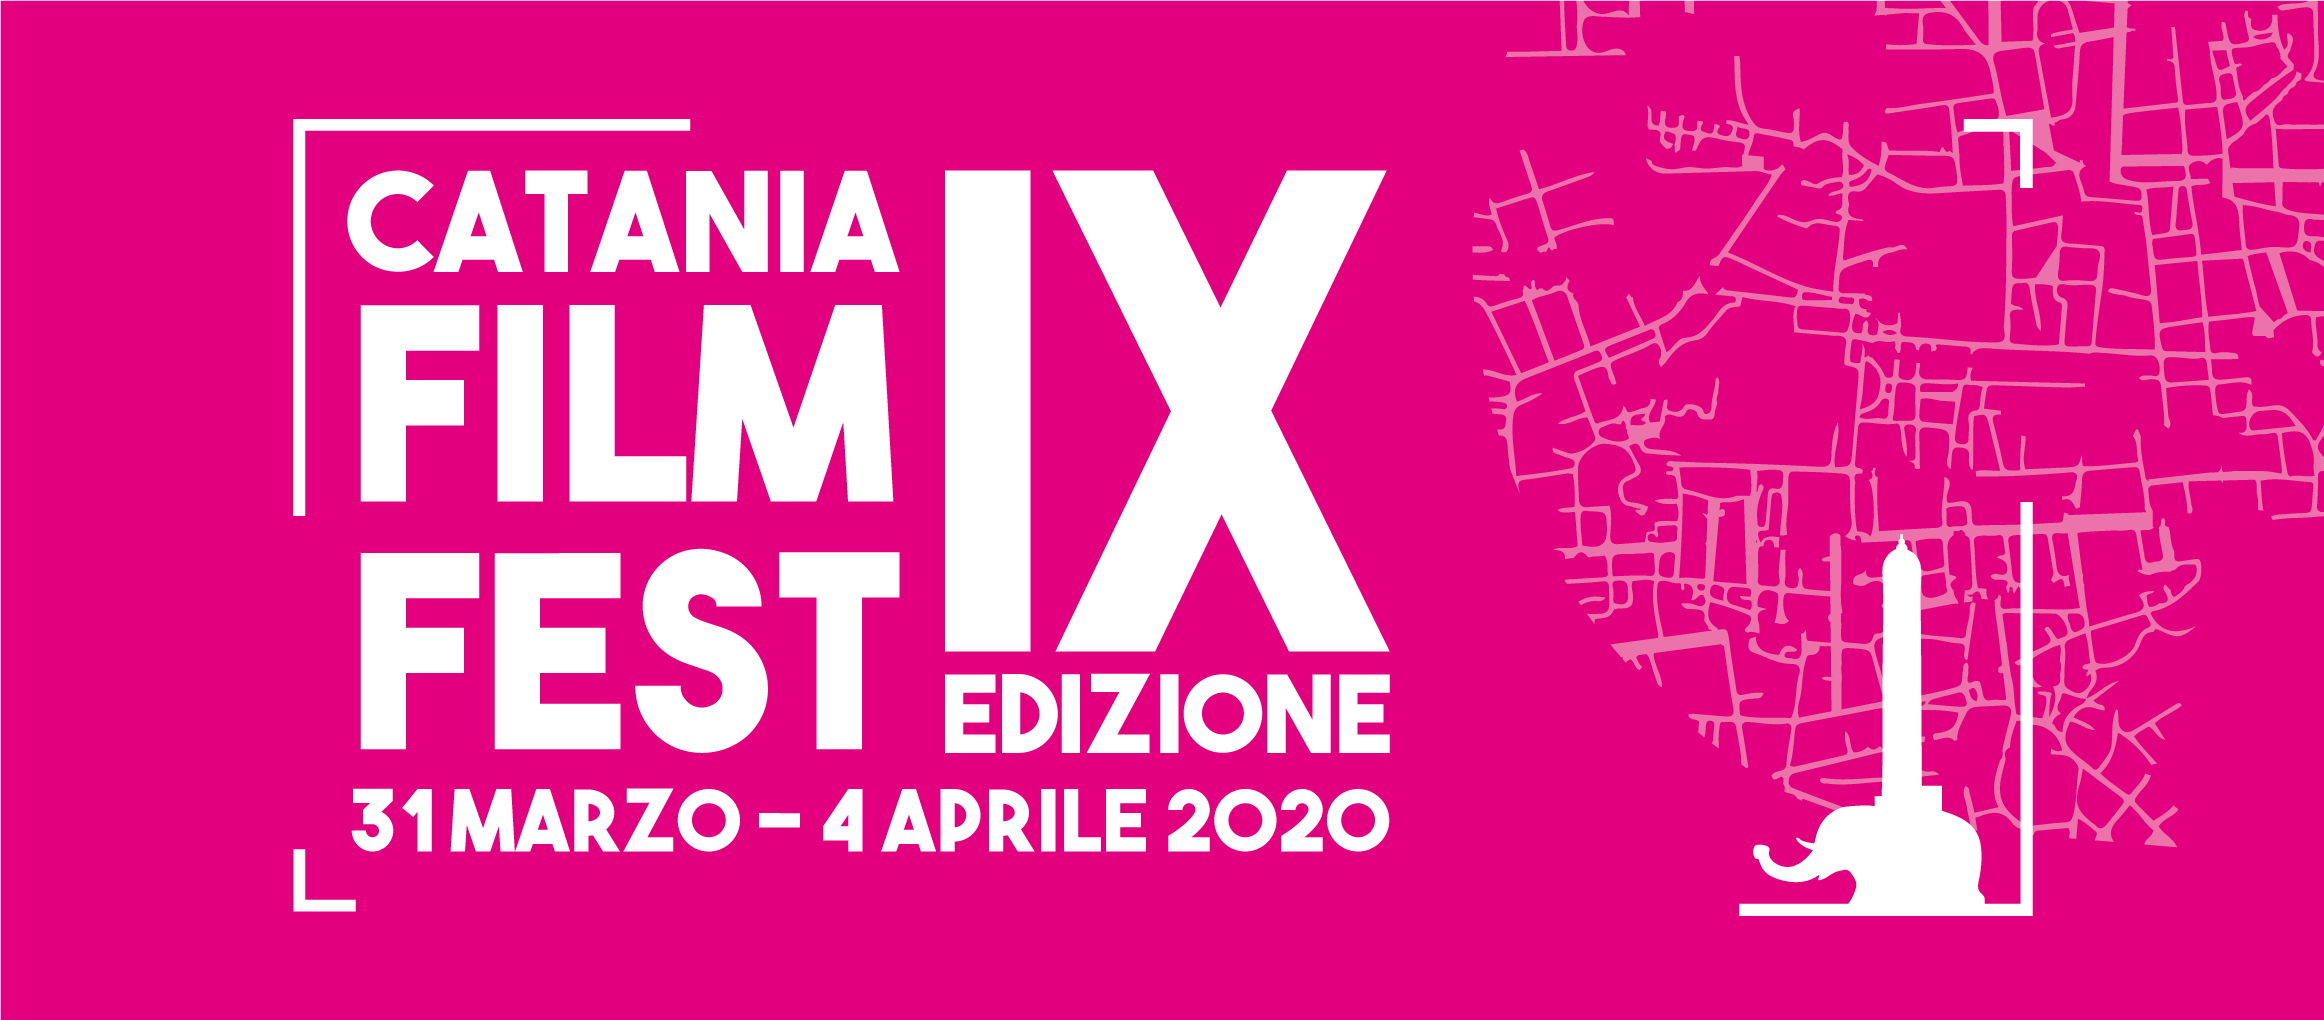 Catania-Film-Fest-Cinema-Sicilia-date-2020